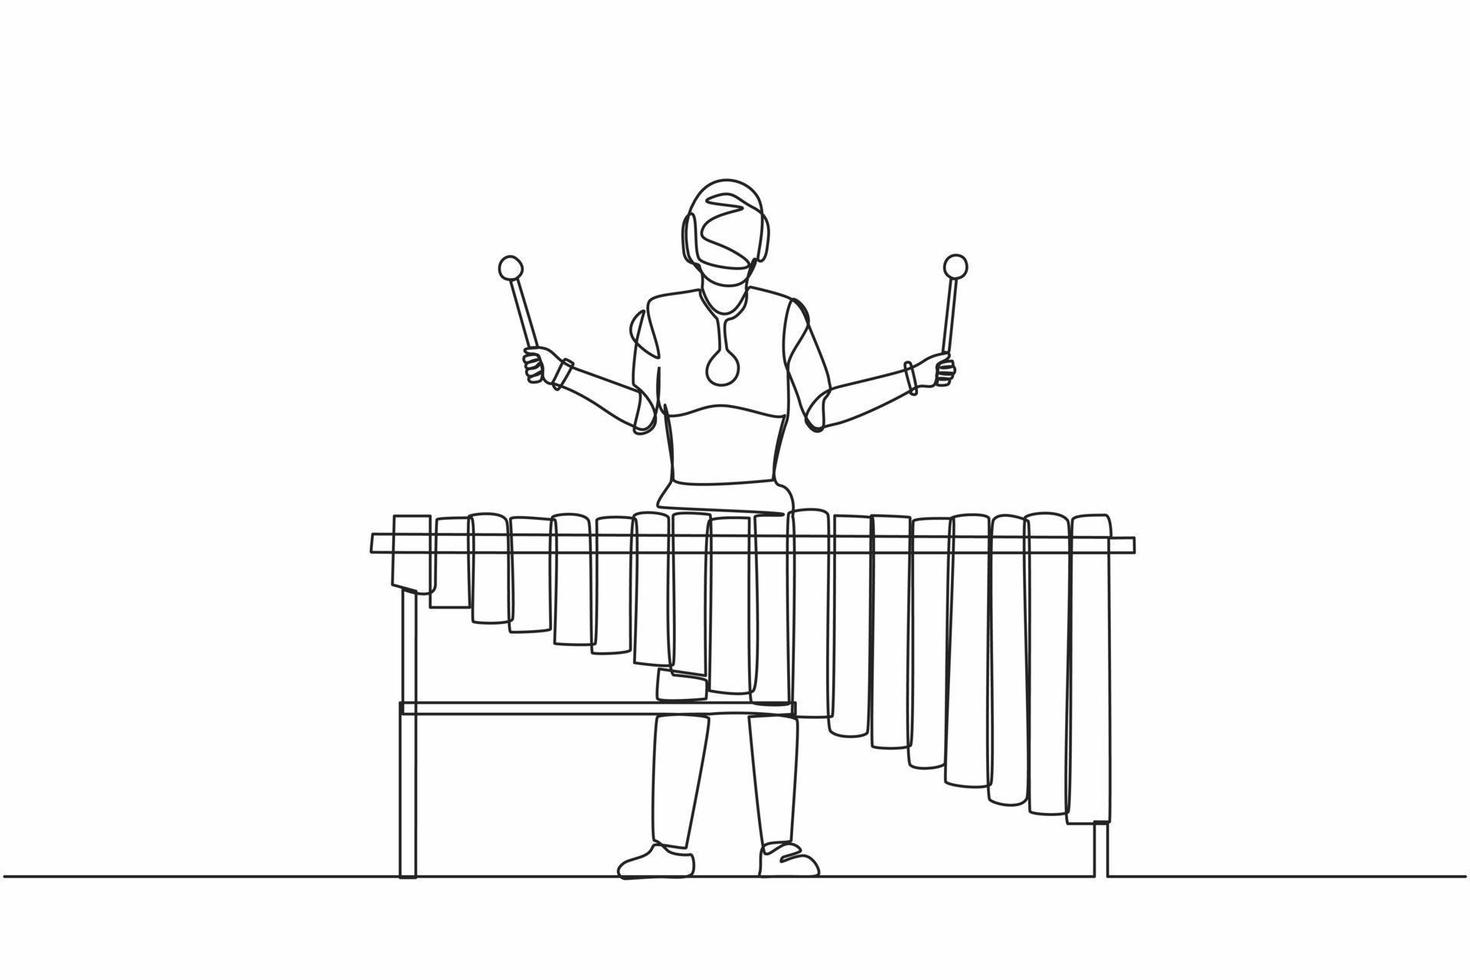 Single Continuous Line Drawing Robot Percussion Player spielt Marimba beim Musikvolksfest. robotische künstliche Intelligenz. Industrie der Elektrotechnik. eine Linie zeichnen Design-Vektor-Illustration vektor